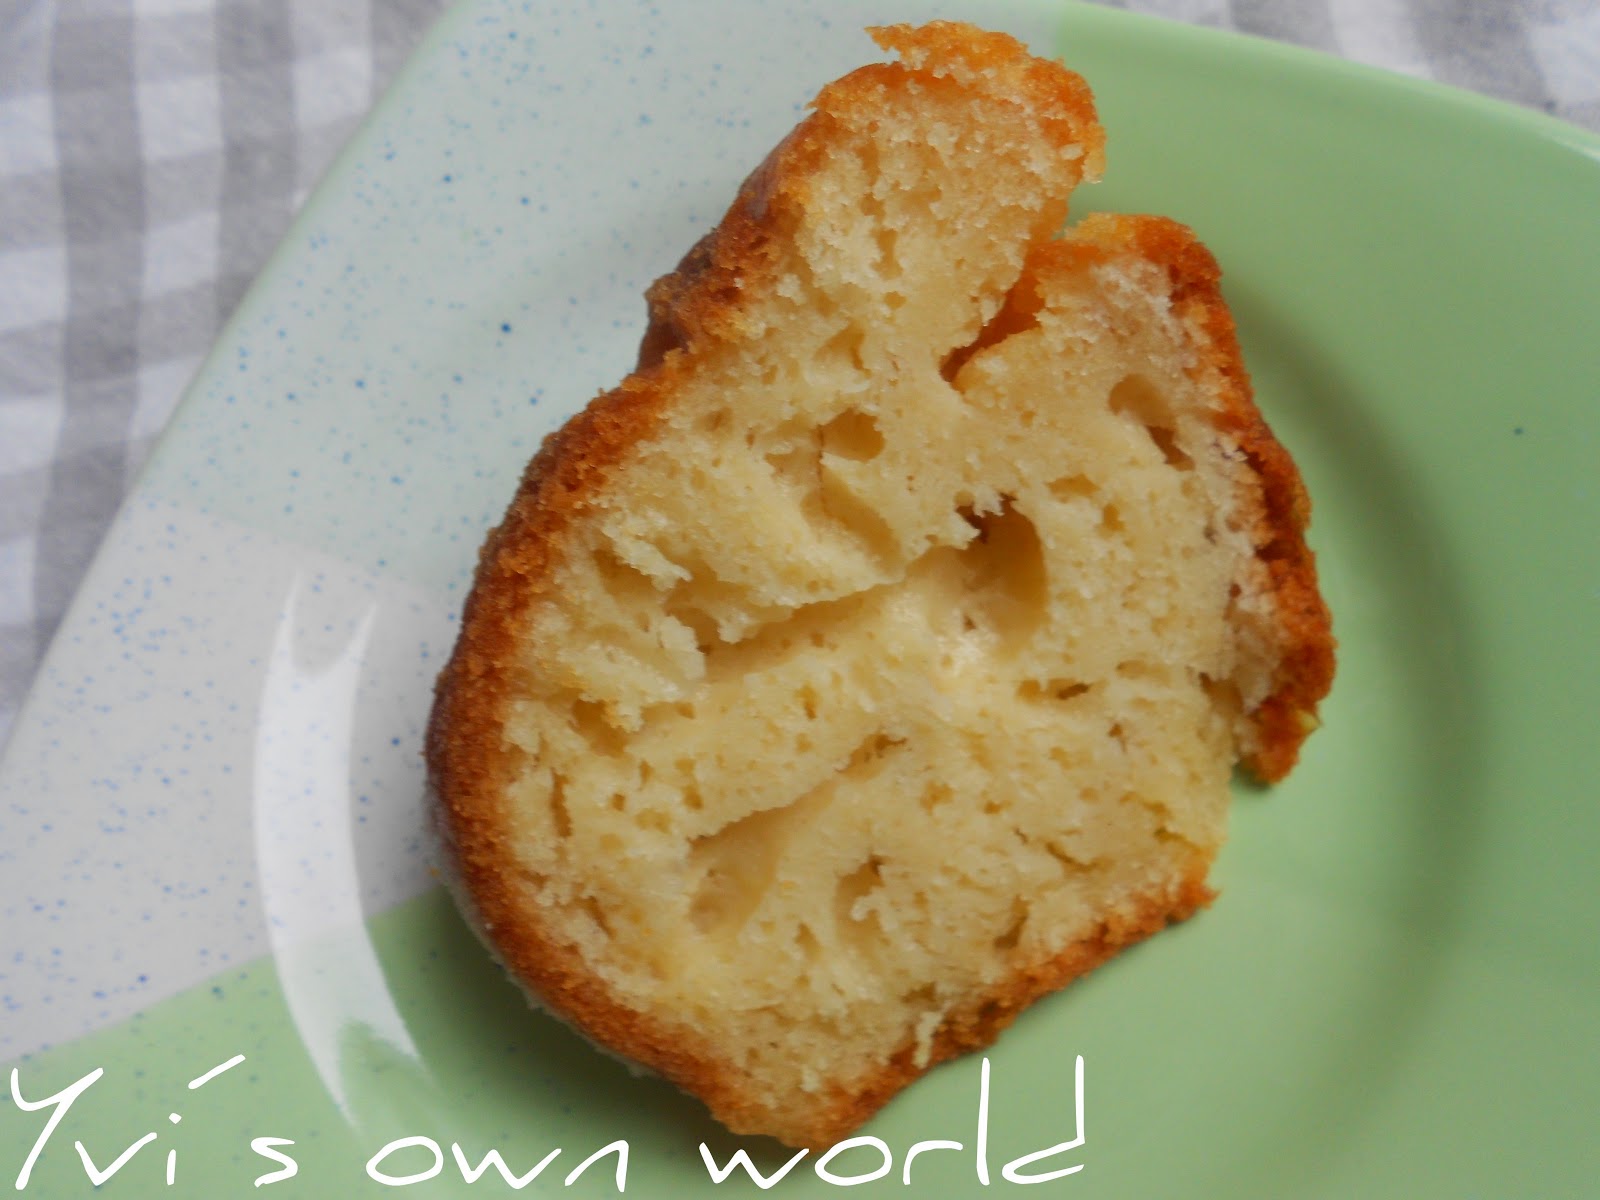 Yvis own world: Zitronenkuchen mit Stevia